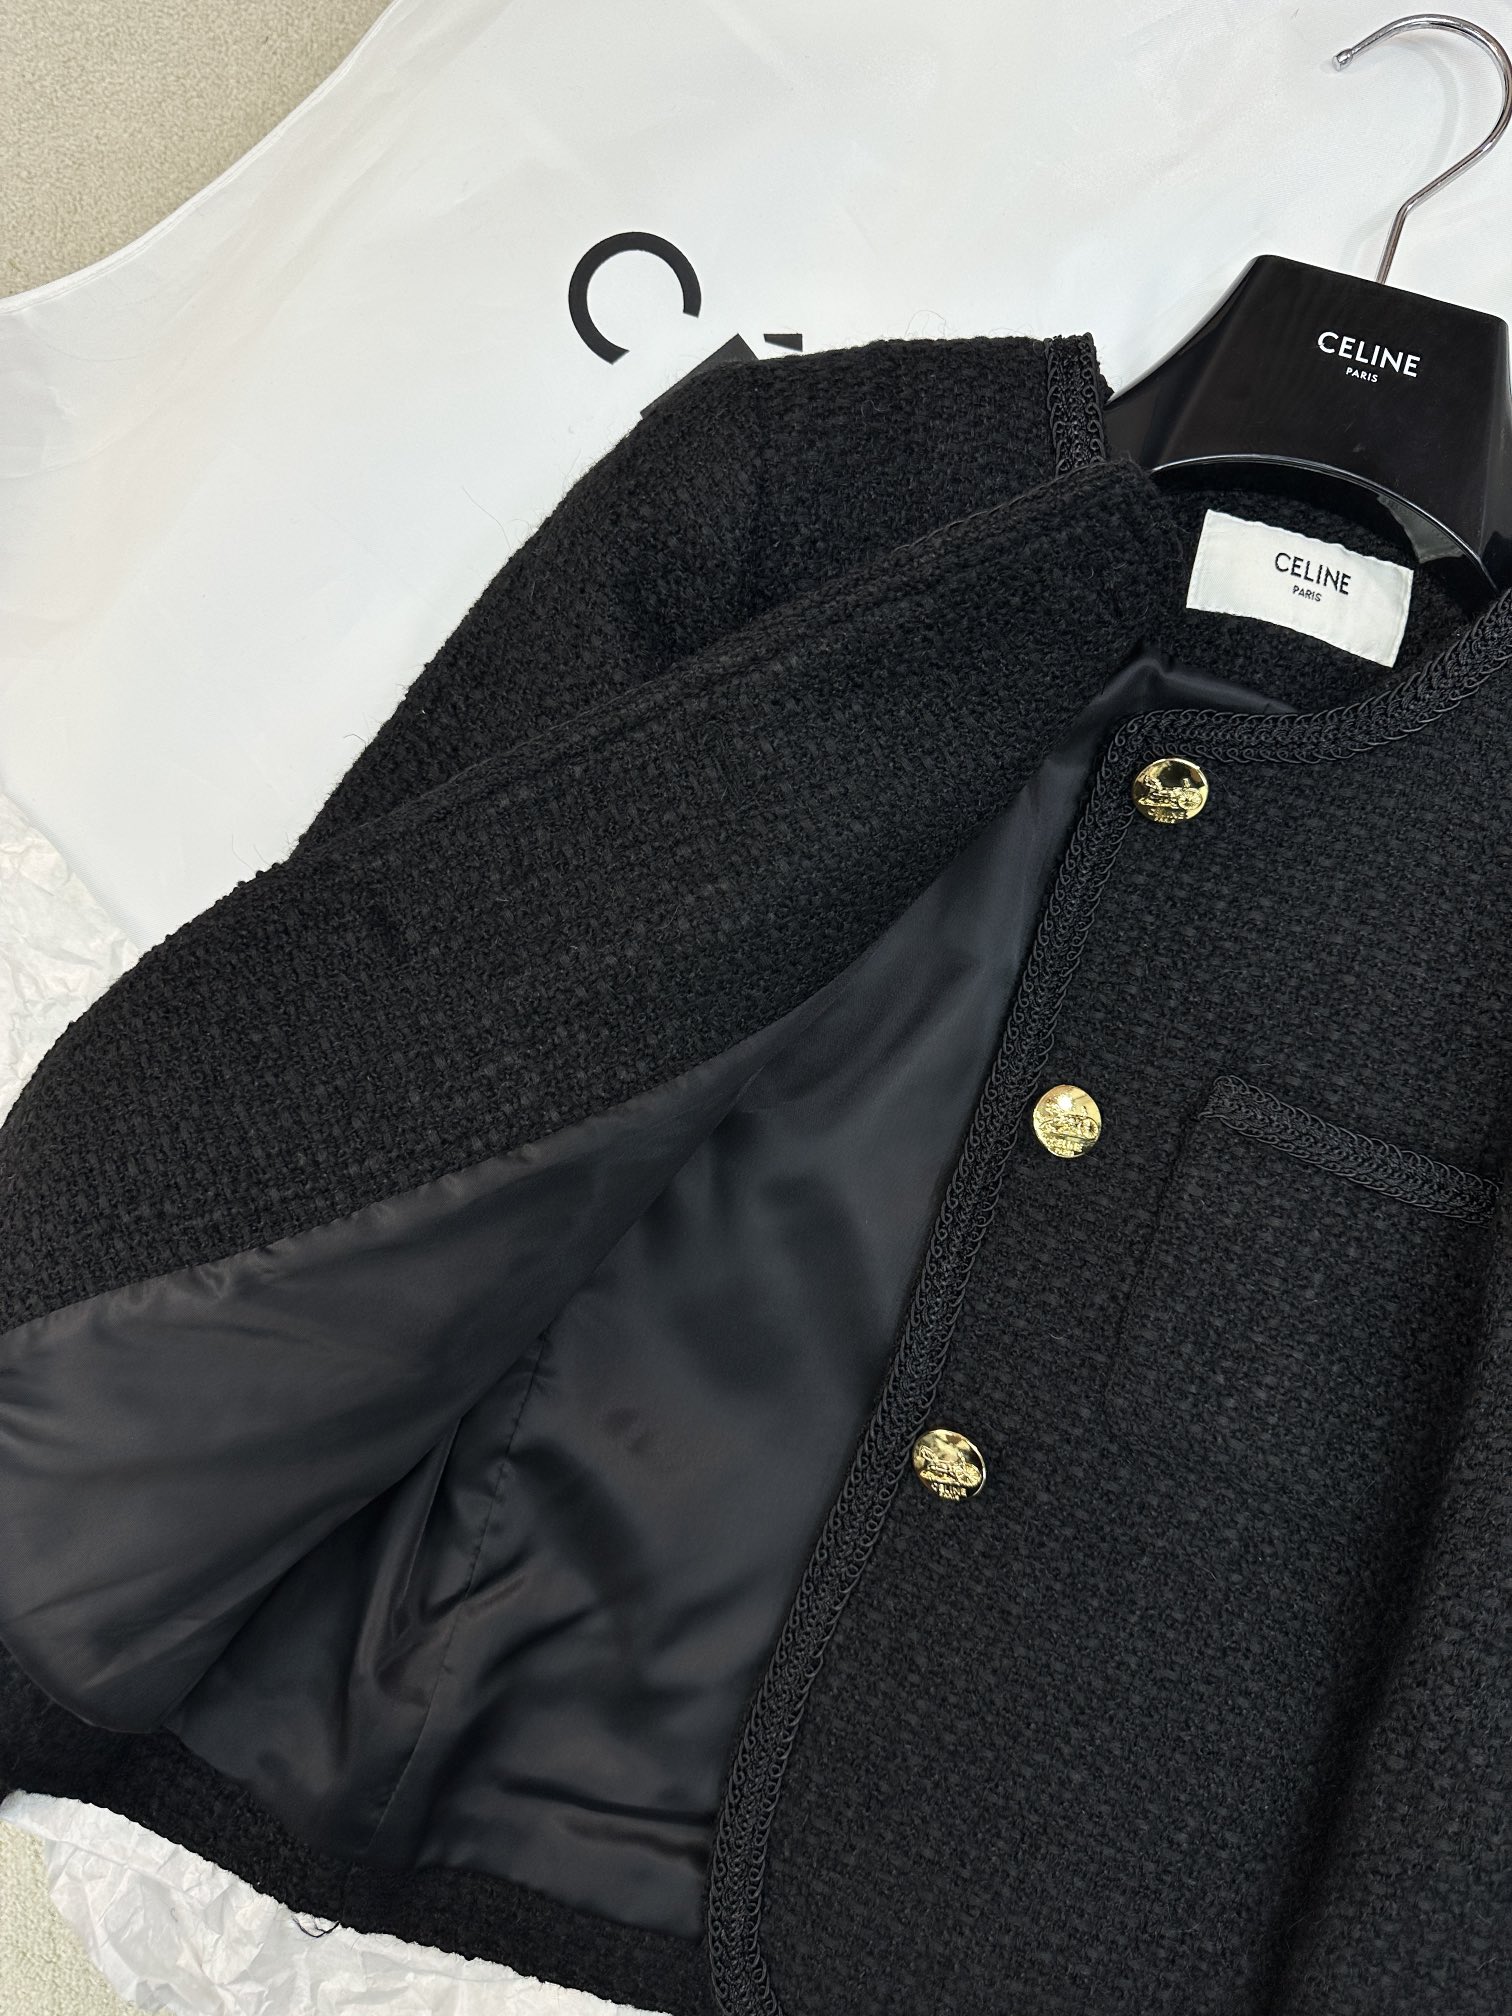 セリーヌ テーラード ジャケット メンズｎ級品 高級感 アウター おしゃれセーター 暖かい 柔らかい 品質保証 ブラック_2